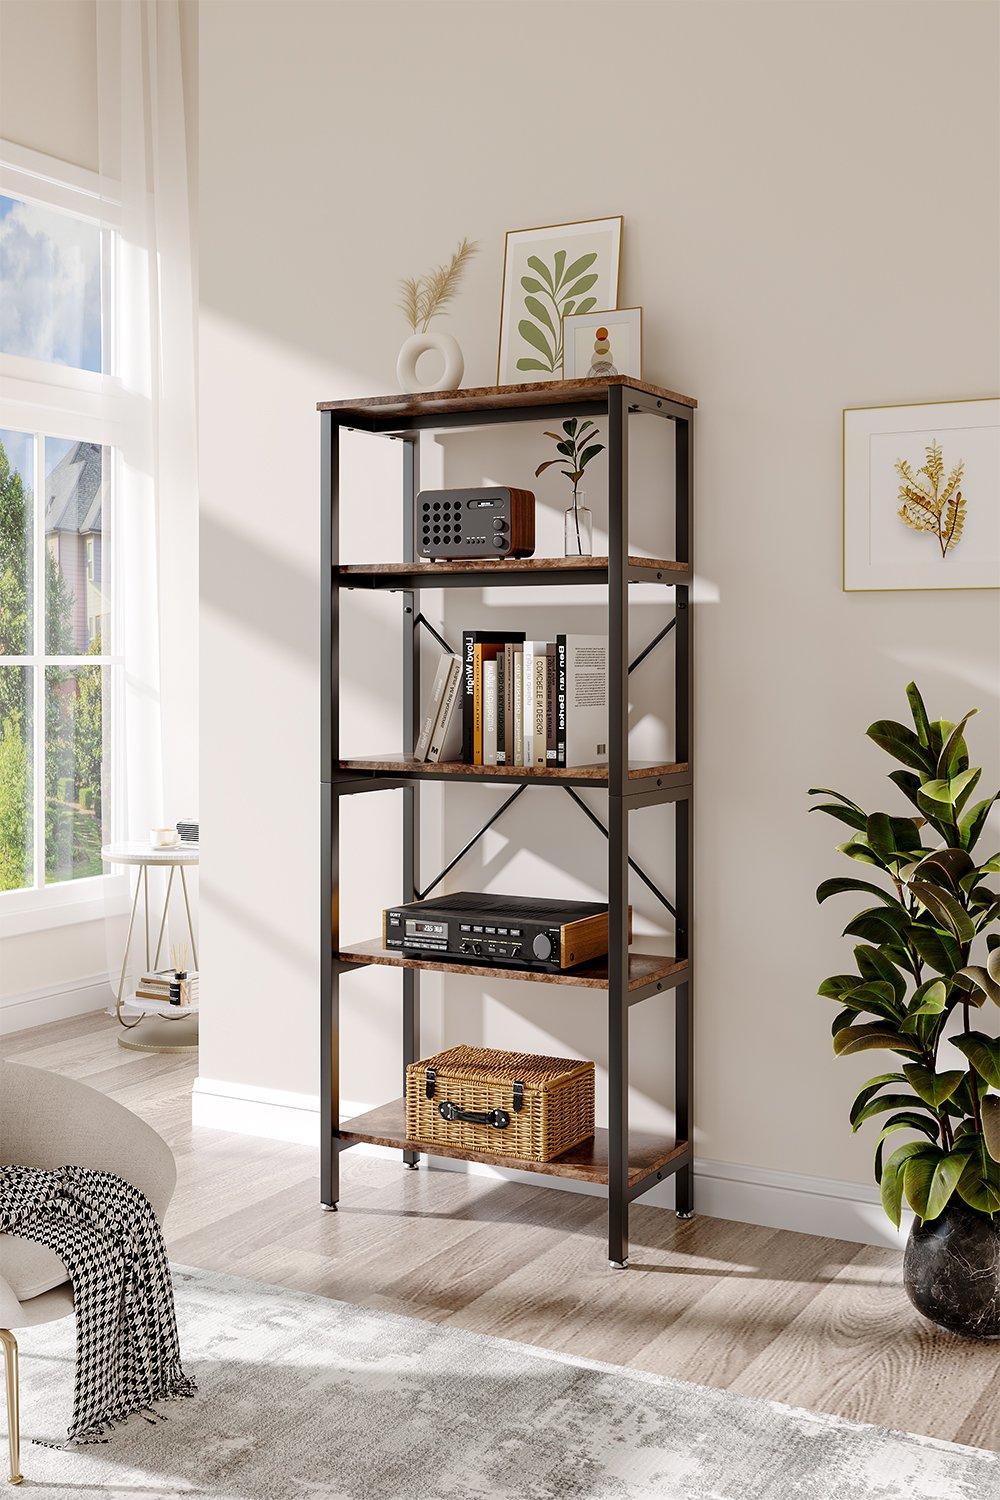 5-Tier Ladder Bookshelf with Open Storage Unit